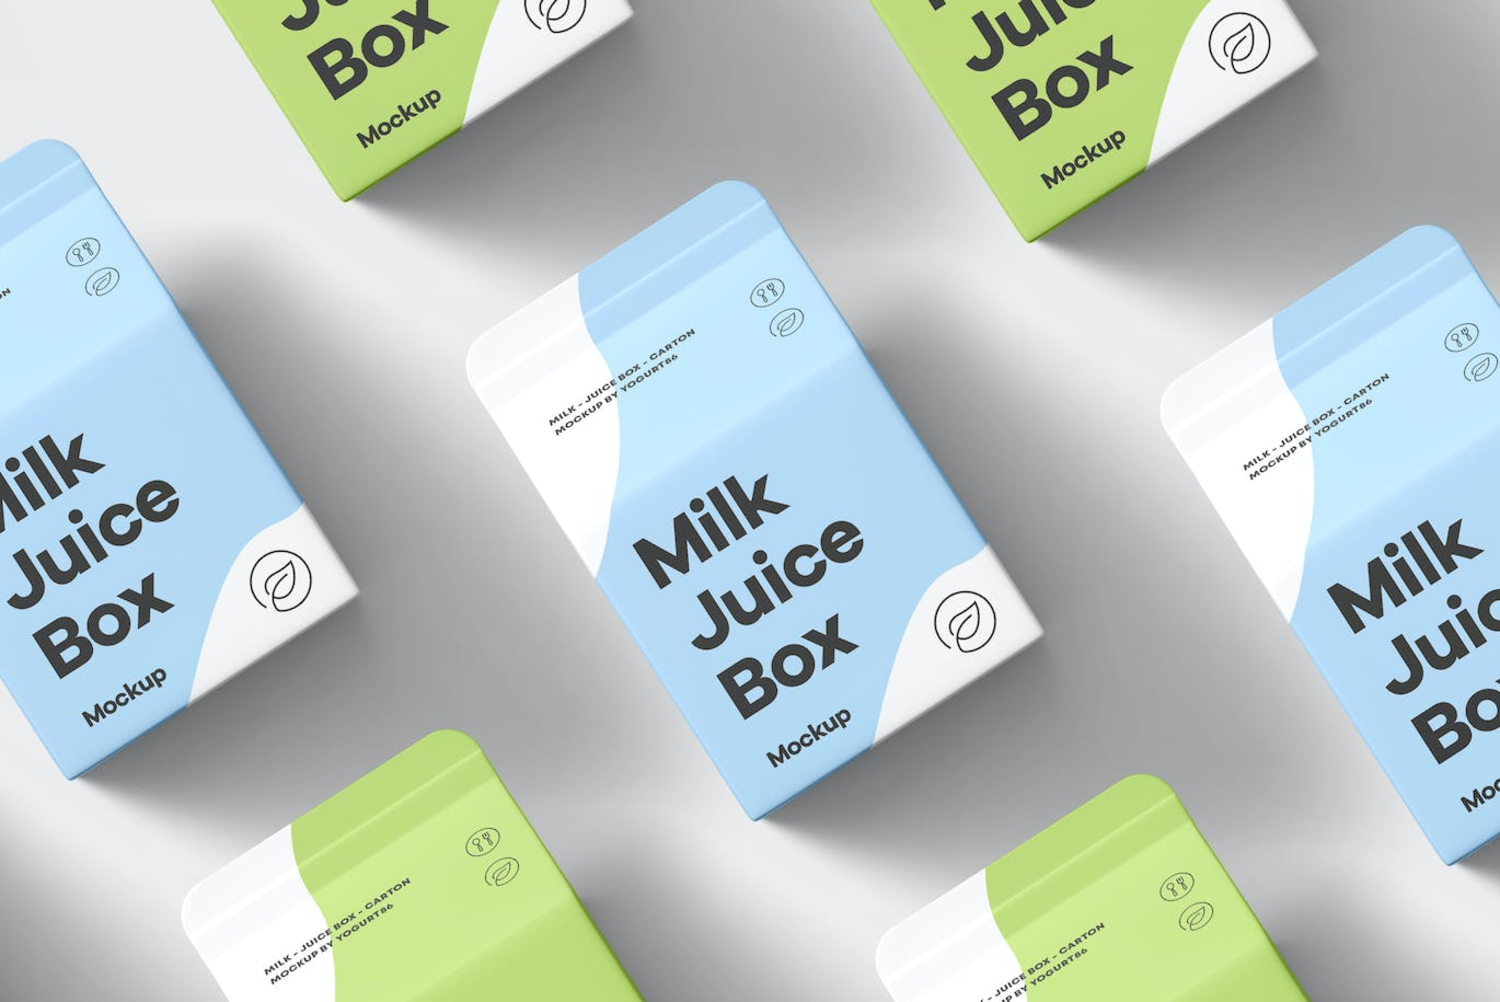 5764 牛奶果汁盒包装设计样机